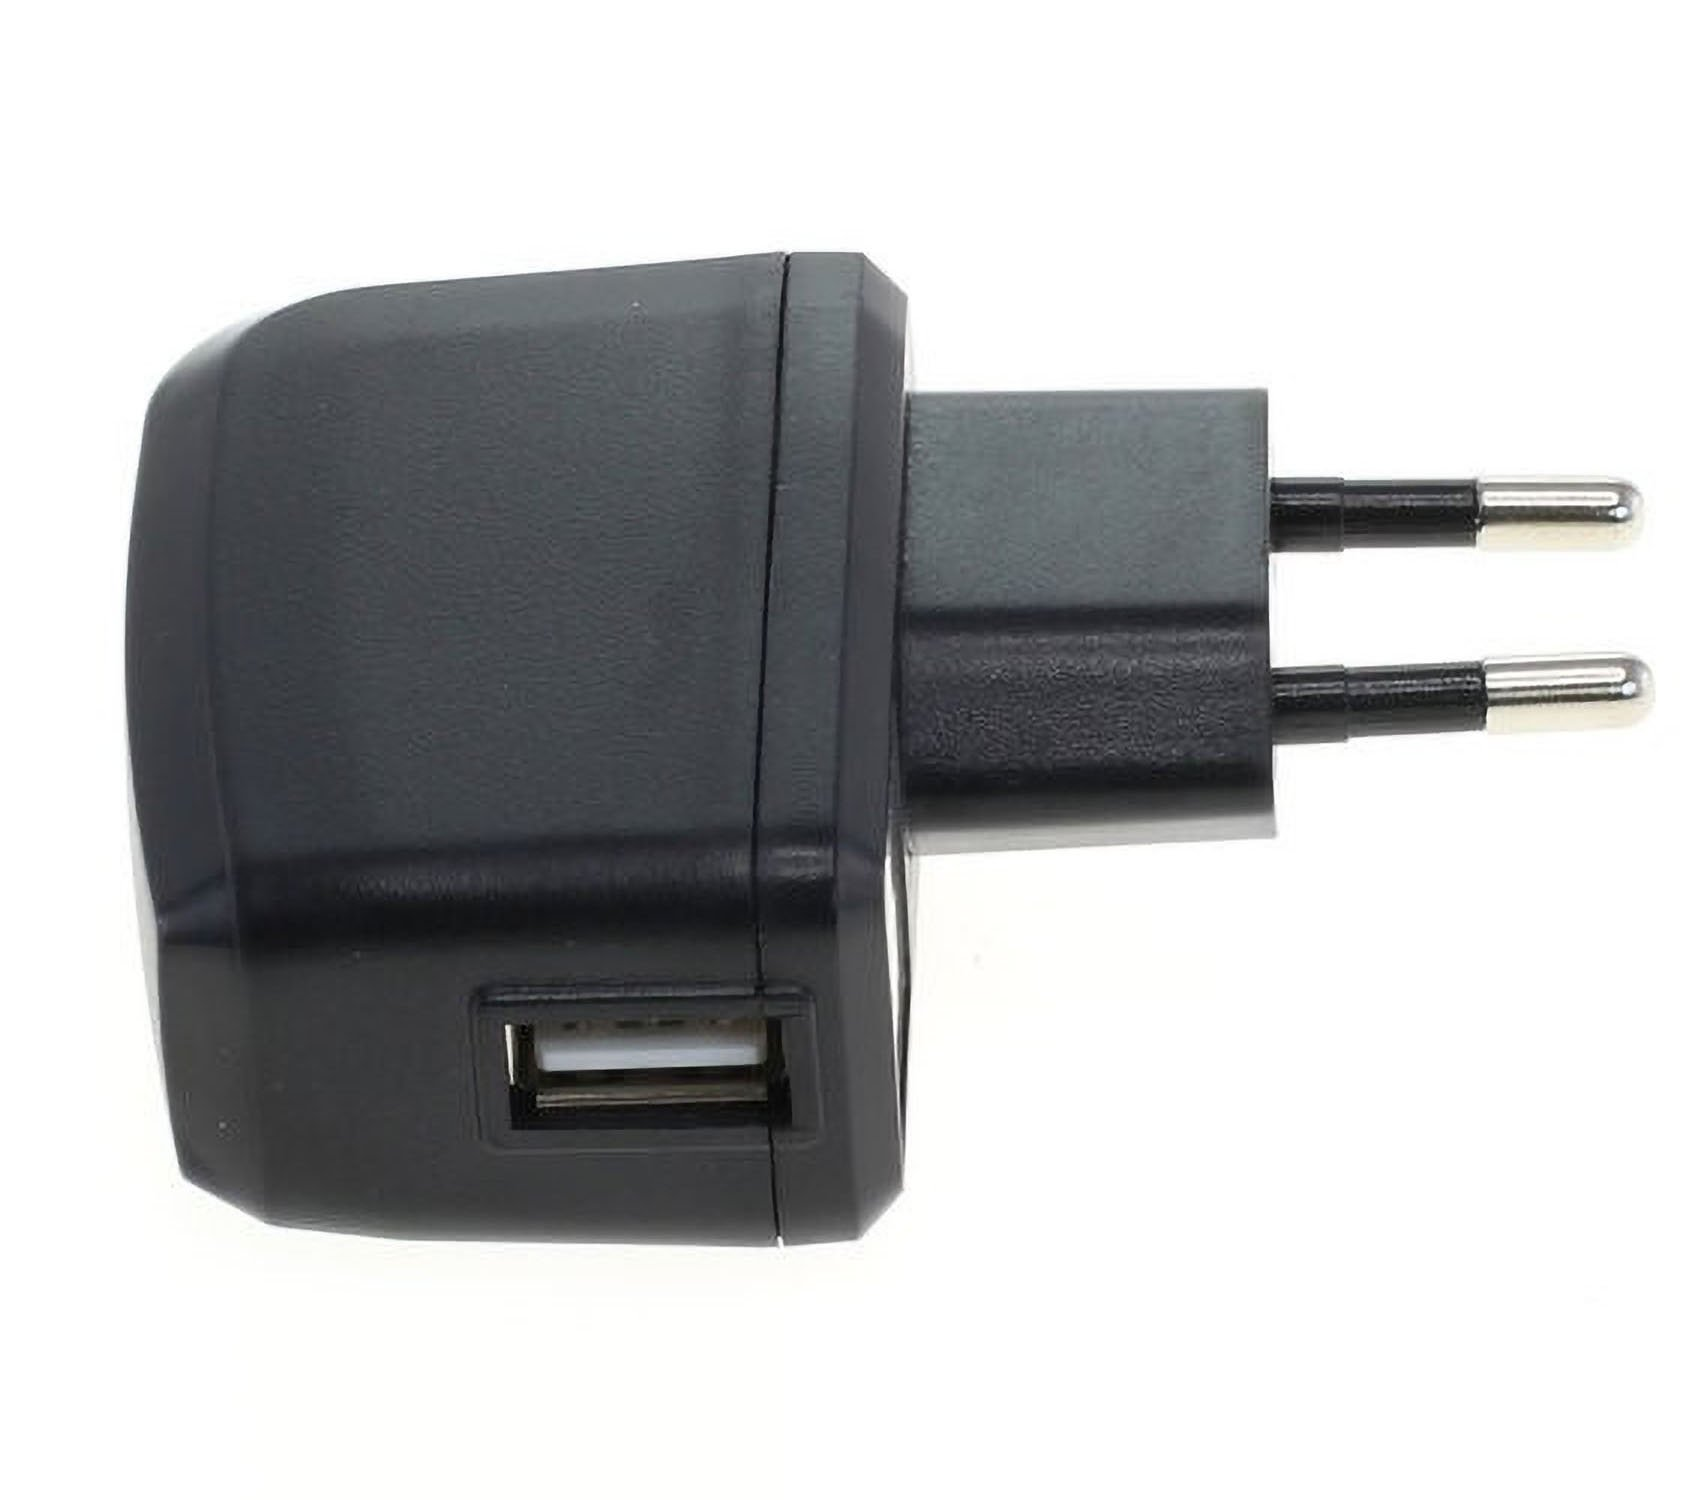 USB-Netzteil kompatibel AGI mit Apple A1300 Notebook-Netzteil